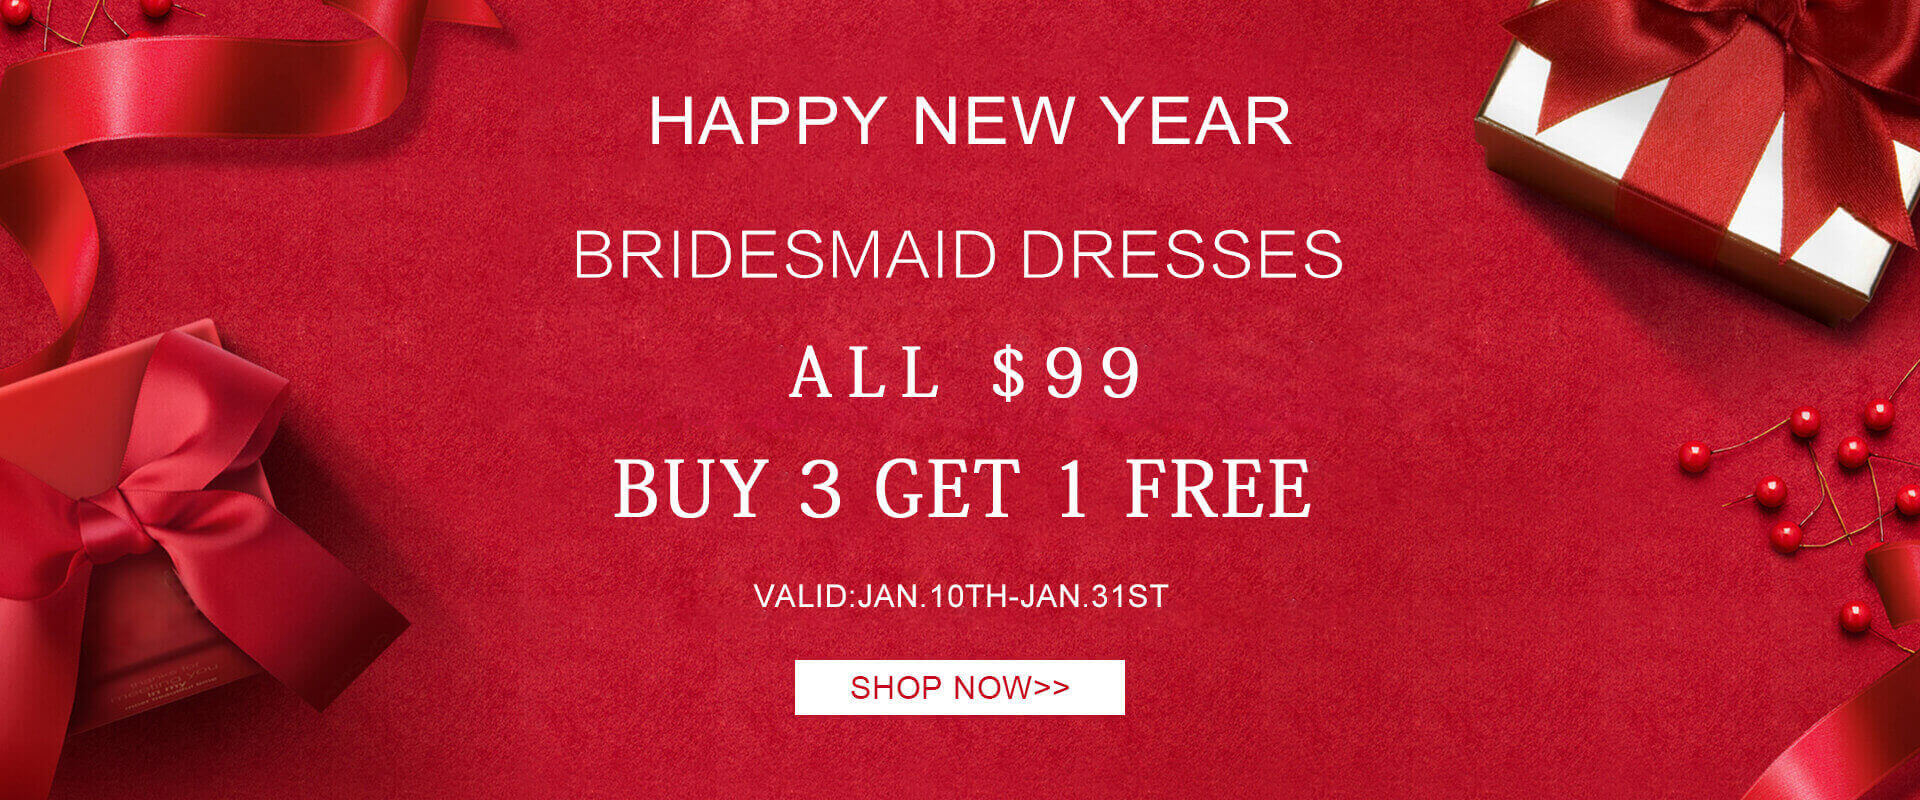 bridesmaid dress on sale